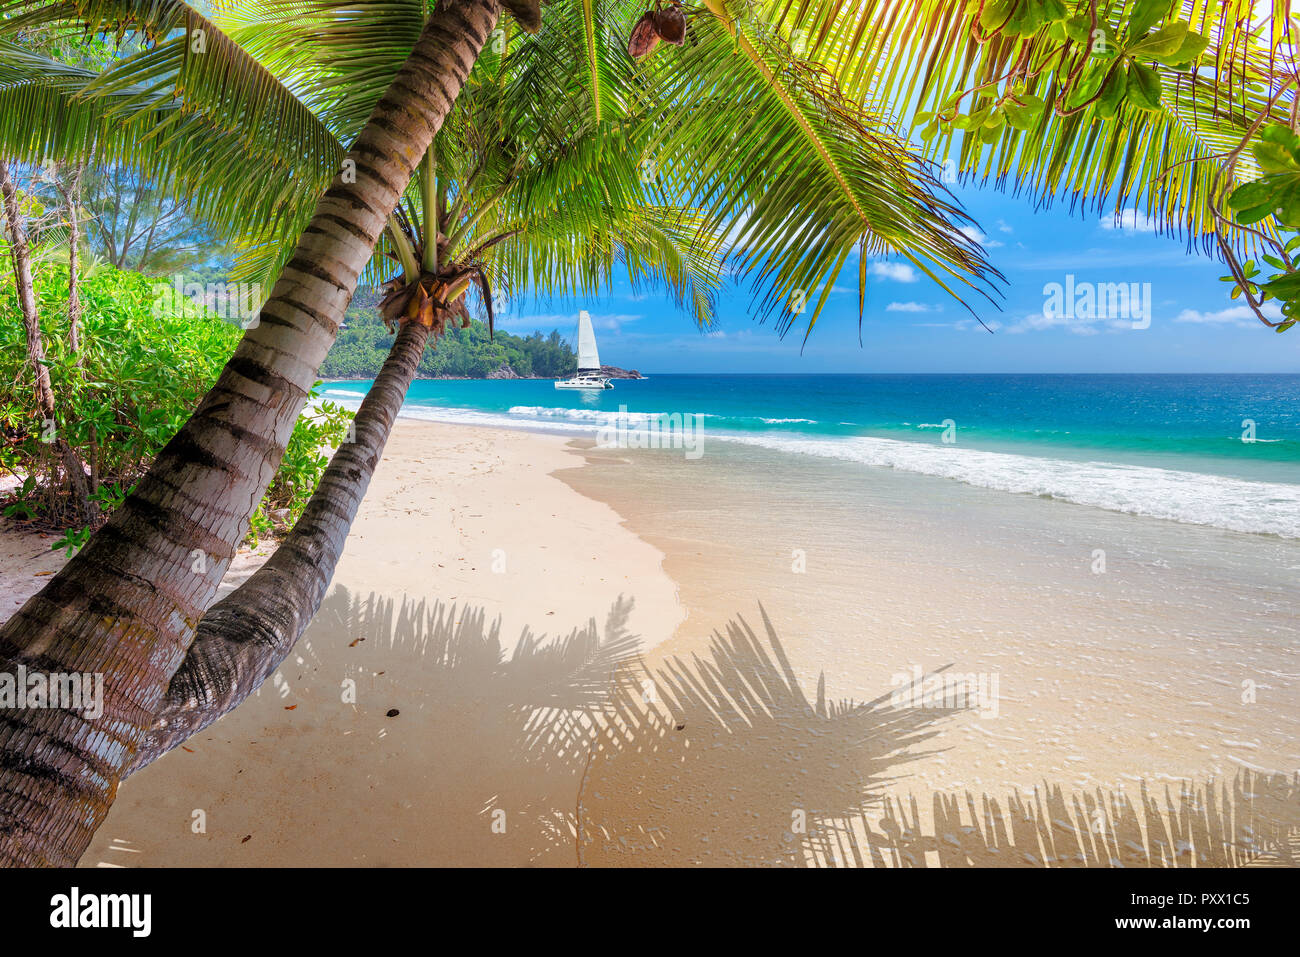 Plage de sable avec des palmiers et un bateau à voile dans la mer sur l'île de la Jamaïque. Banque D'Images